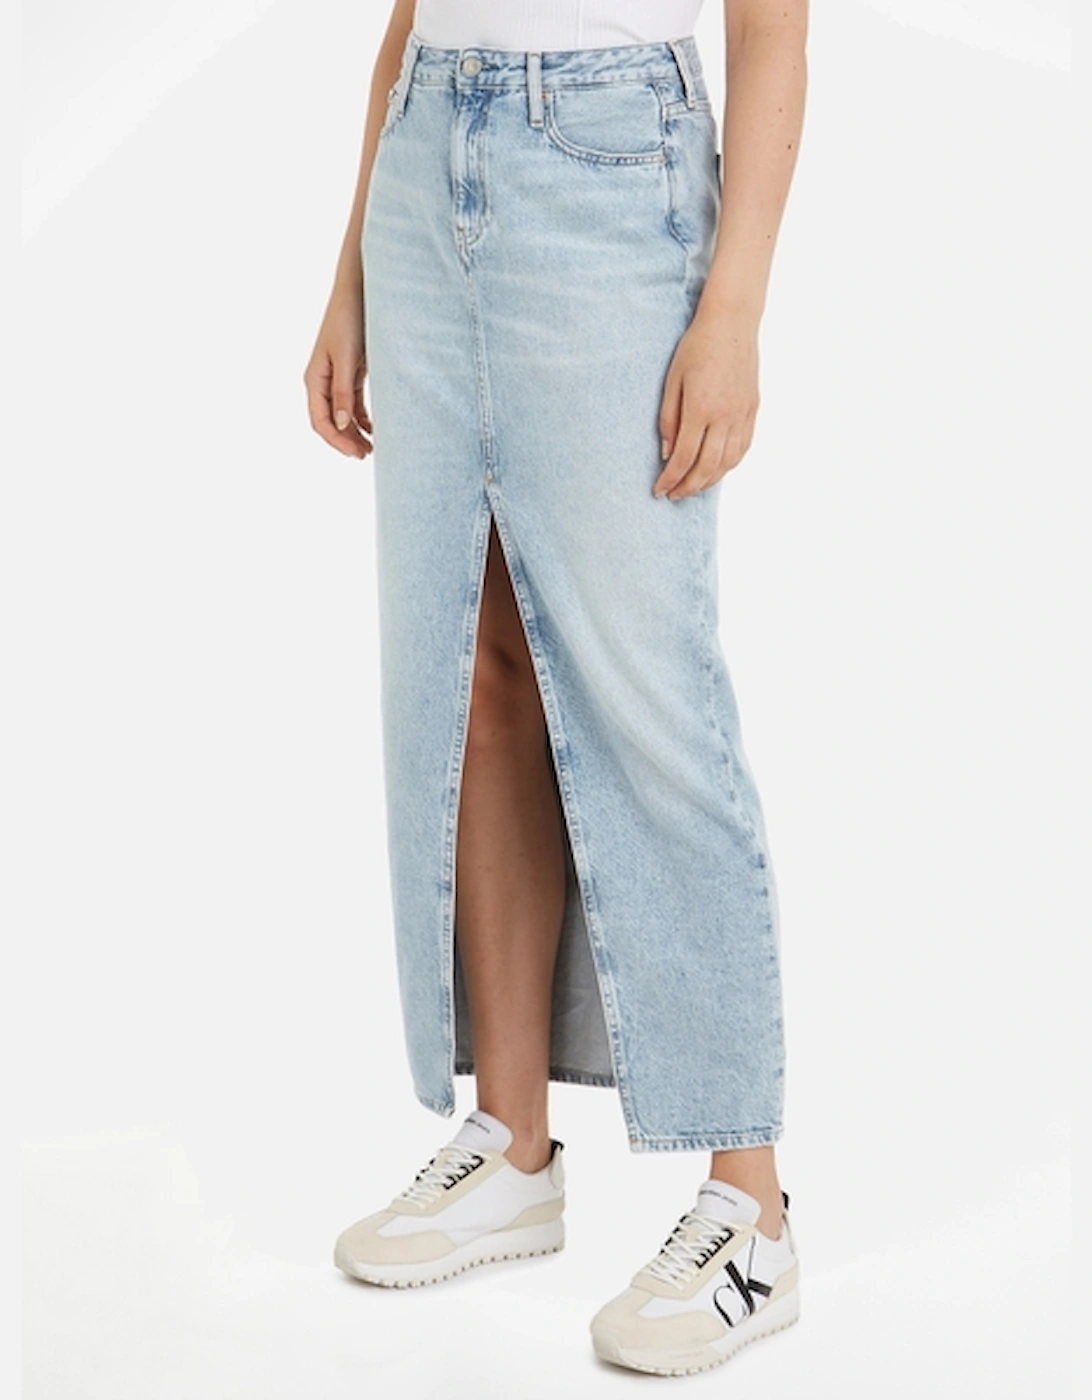 Jeans Denim Maxi Skirt, 2 of 1